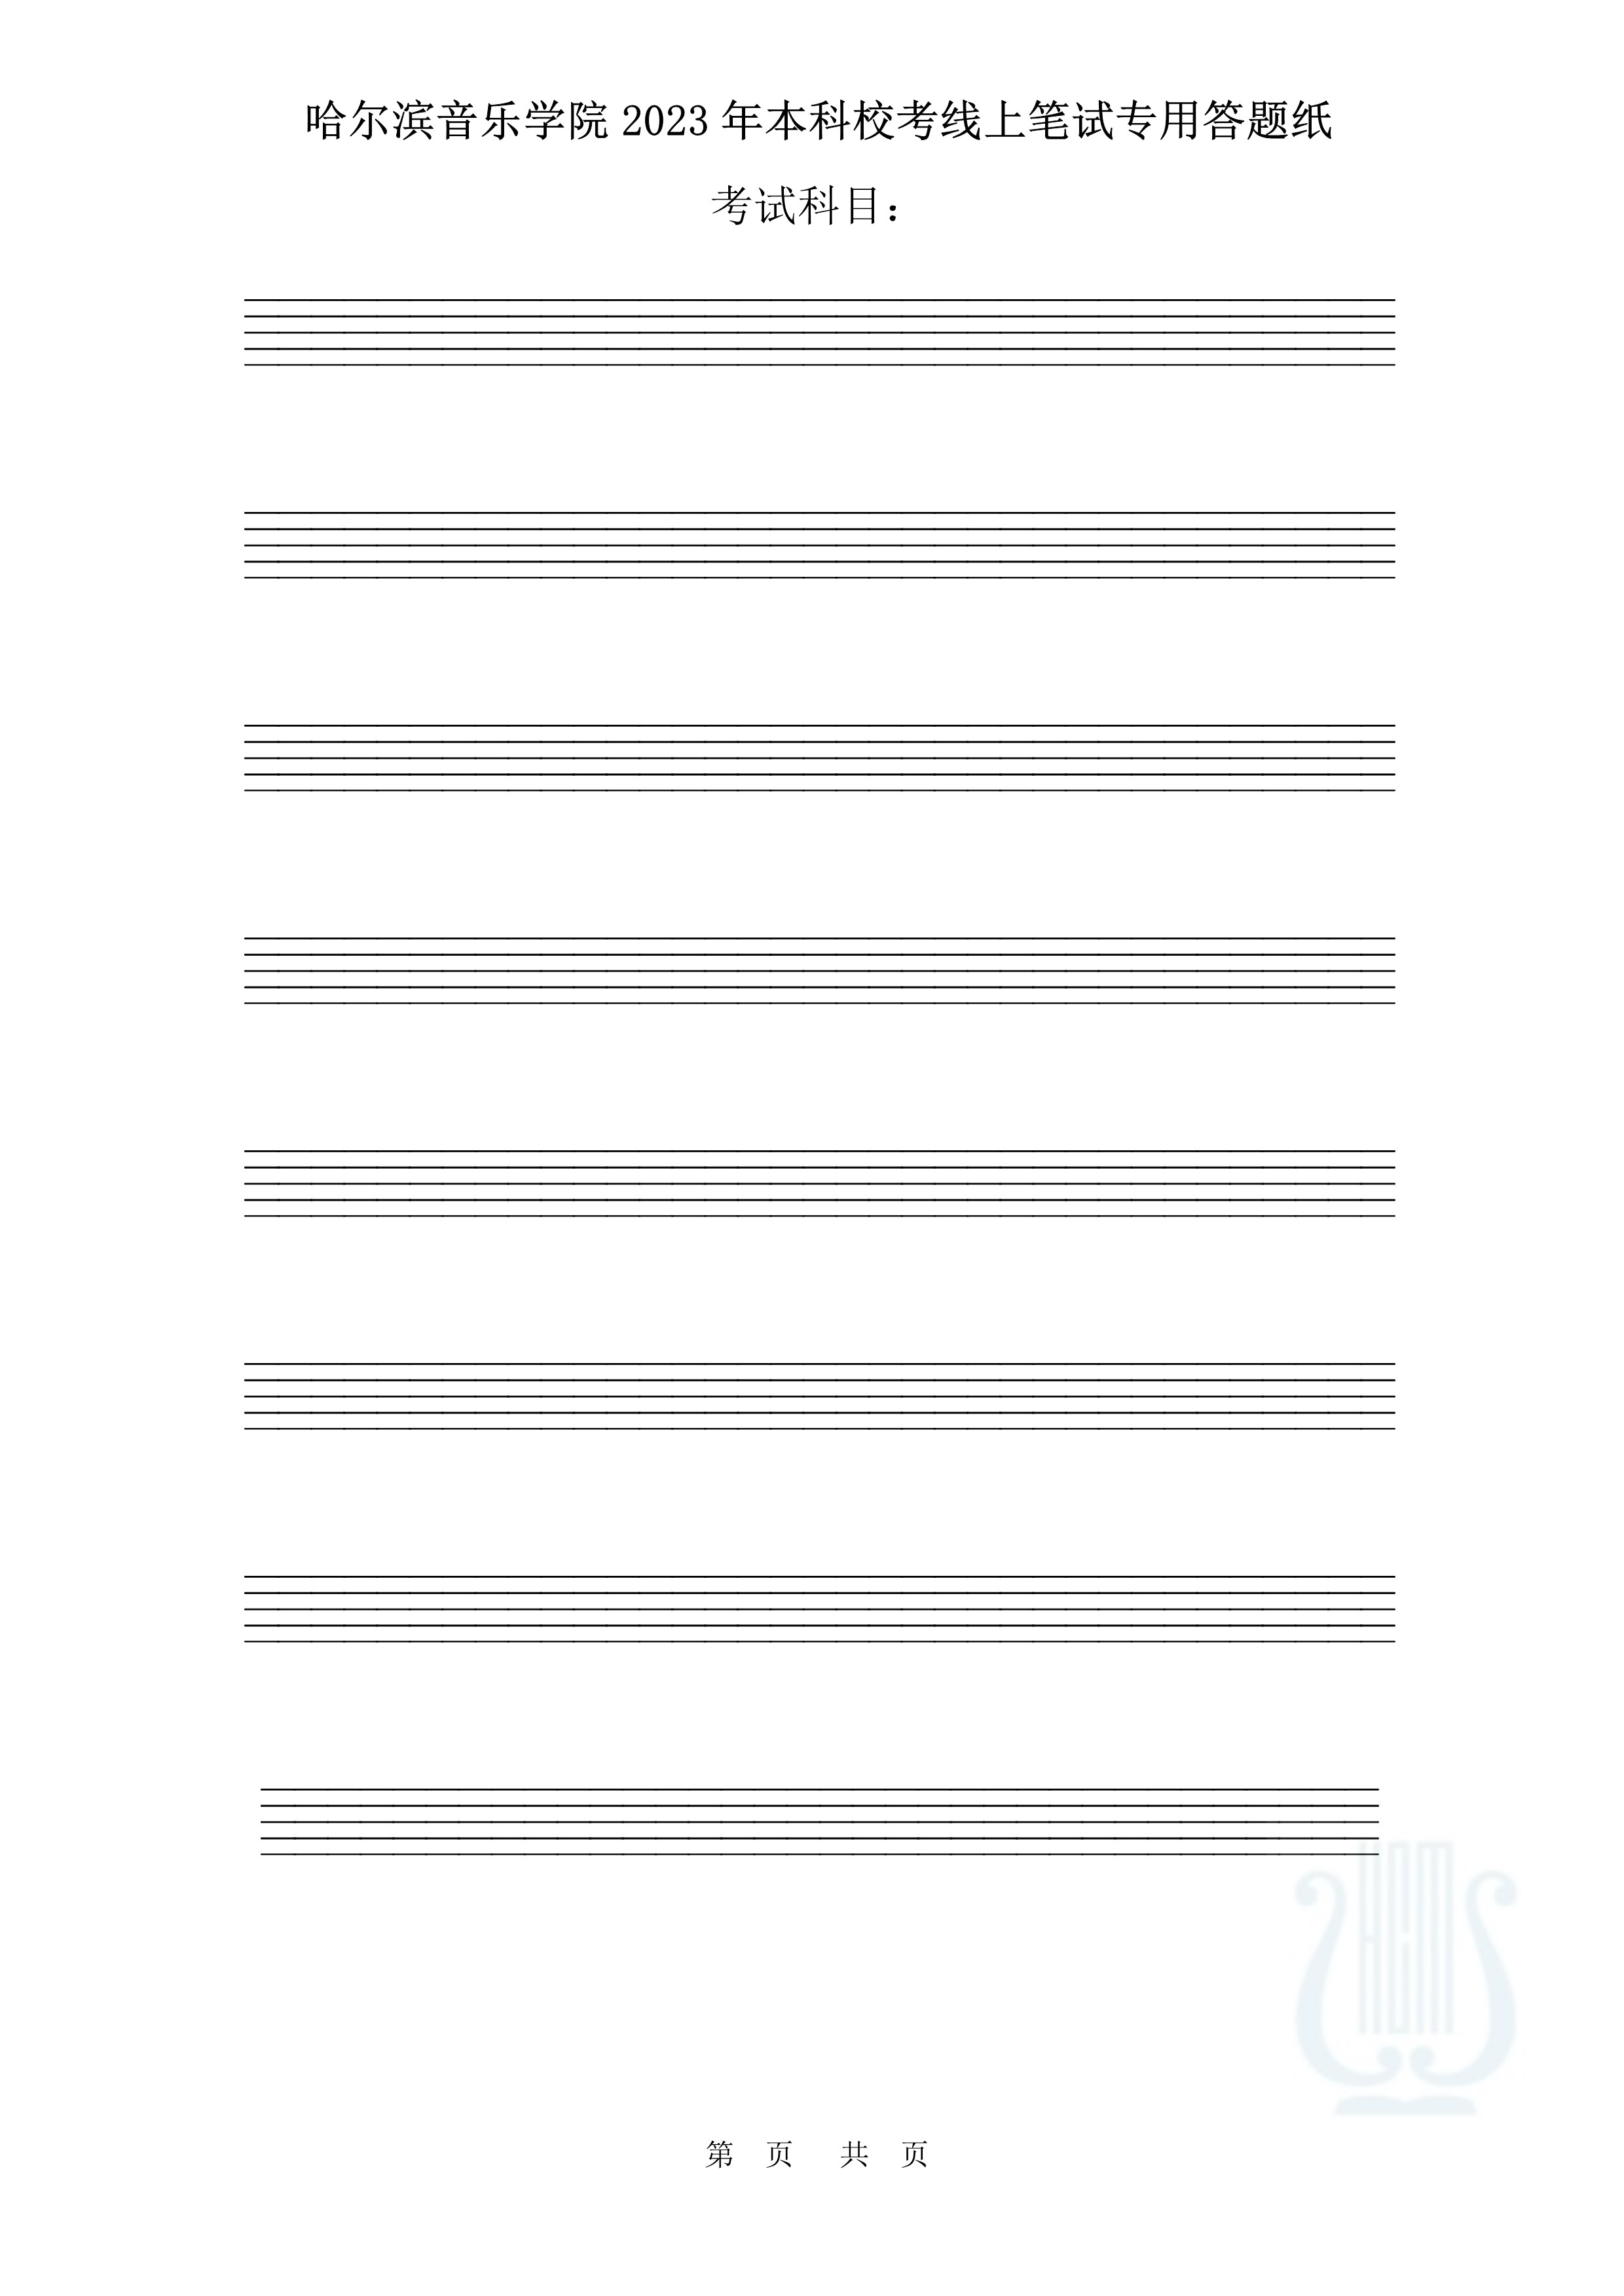 哈尔滨音乐学院2023年本科校考线上笔试答题纸（作曲与作曲技术理论）_2.jpg